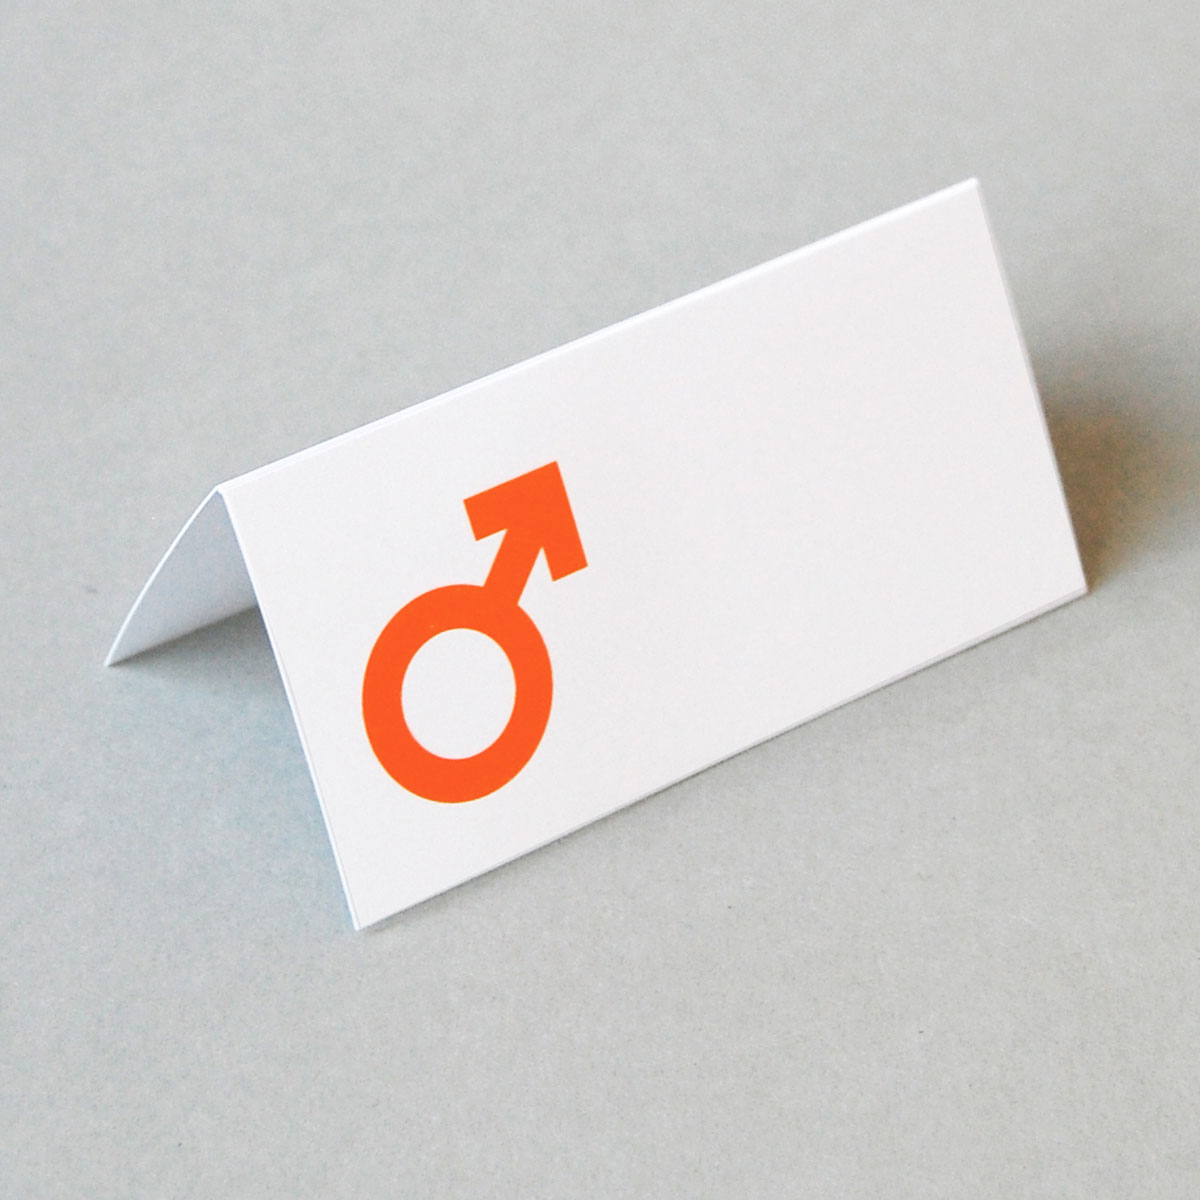 Marssymbol, Tischkarten für die Hochzeitsfeier mit orangem Druck